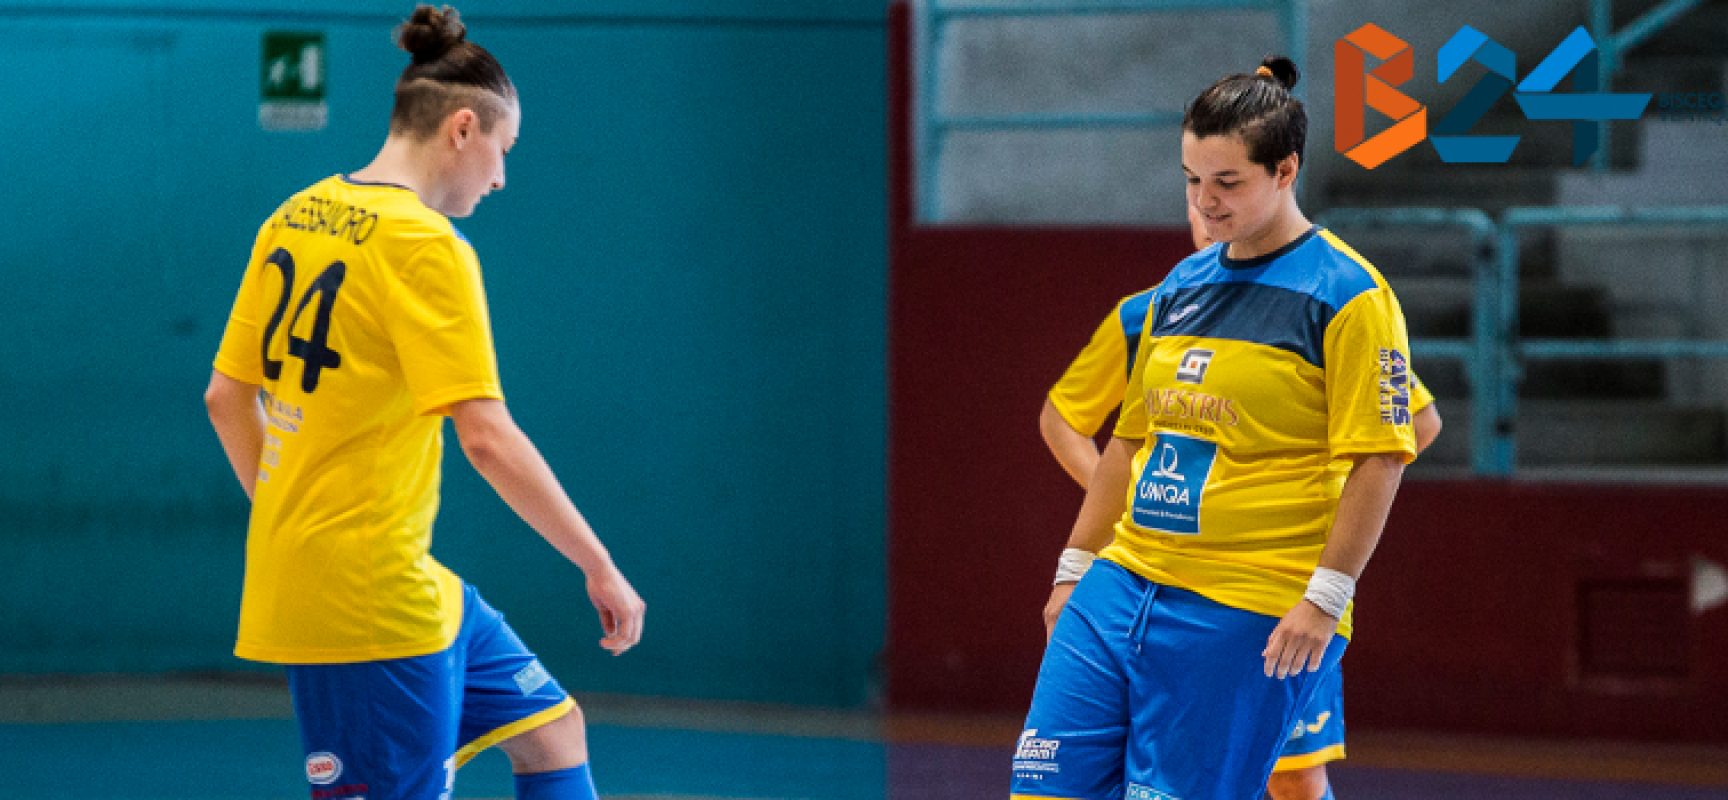 Calcio a 5 femminile: Arcadia sabato ospita il Fasano, Futsal Bisceglie impegnato a Lamezia